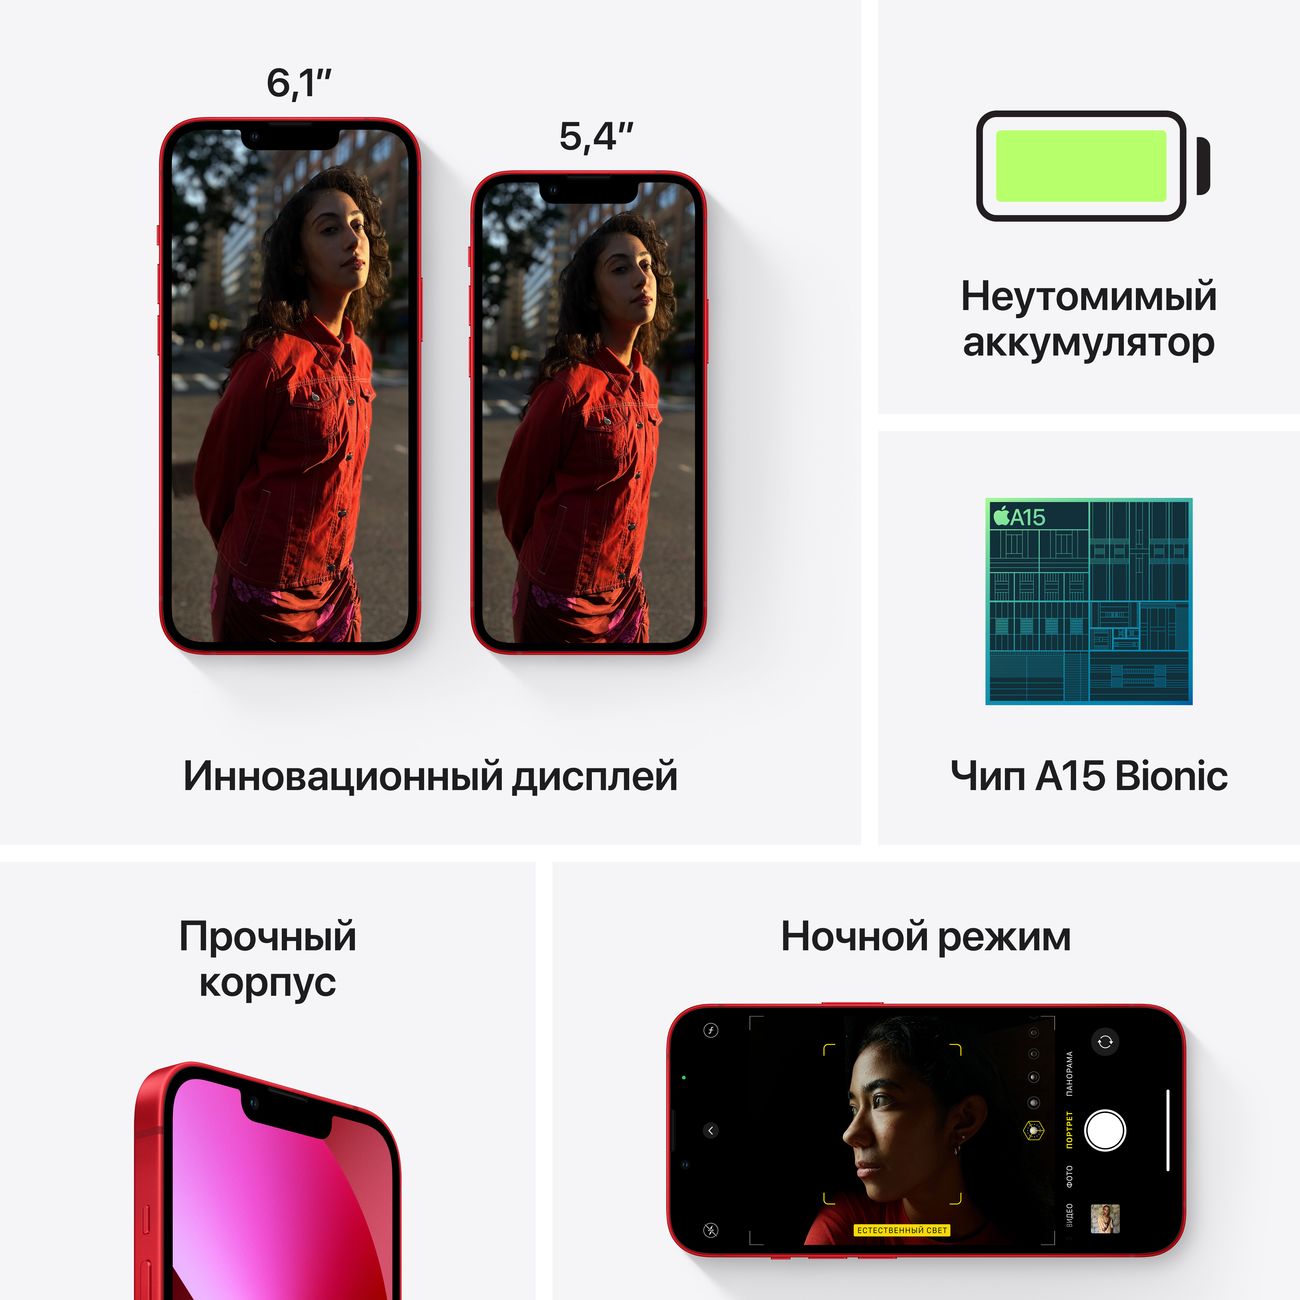 Купить смартфон apple iphone 13 256gb (product) red Apple iPhone 13 в официальном магазине Apple, Samsung, Xiaomi. iPixel.ru Купить, заказ, кредит, рассрочка, отзывы,  характеристики, цена,  фотографии, в подарок.